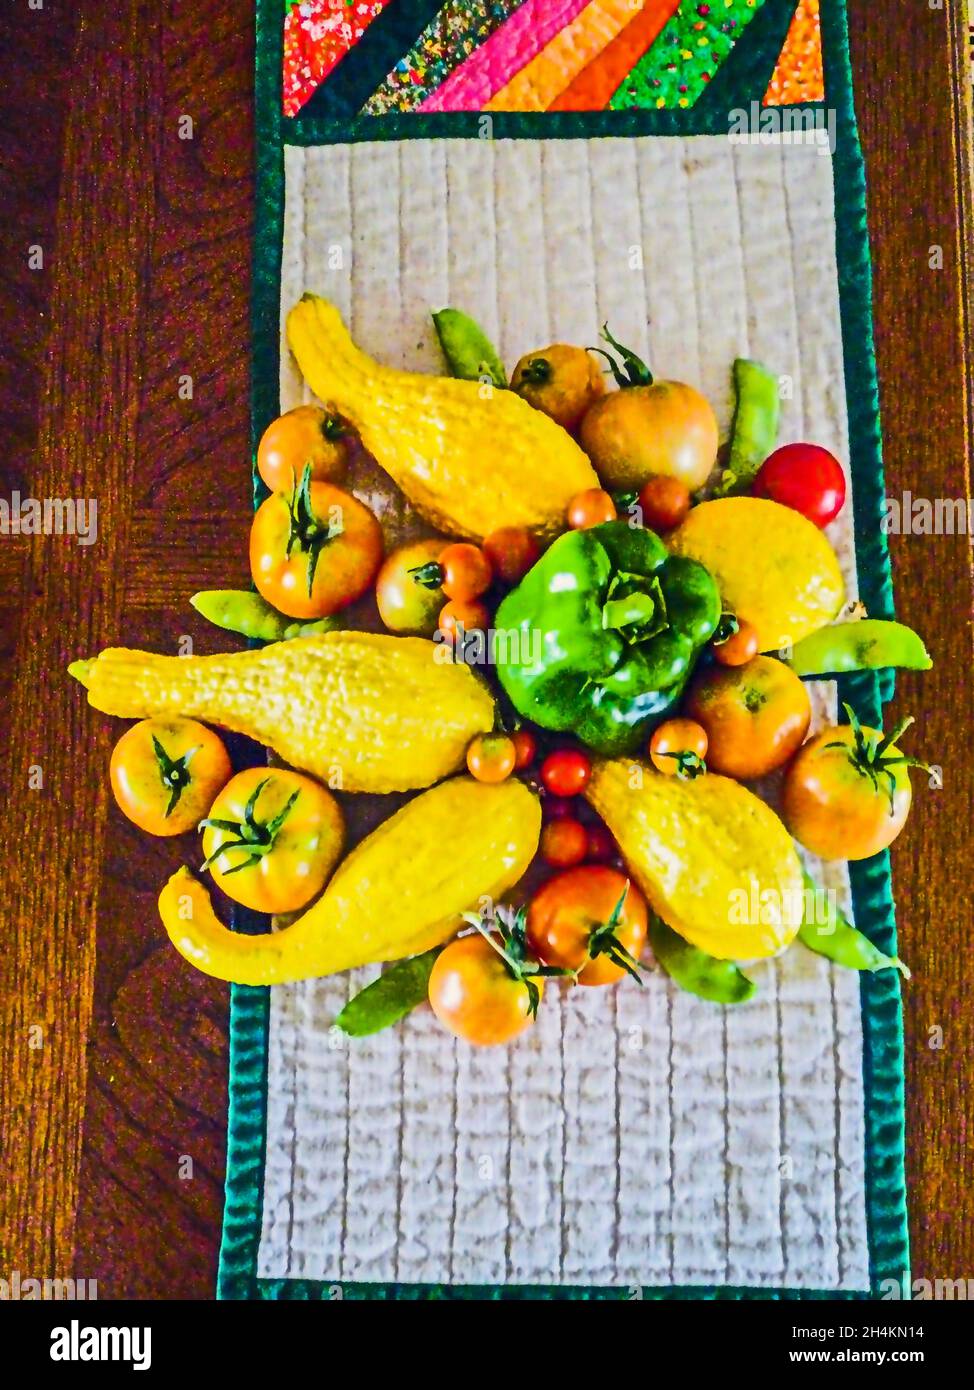 Cosecha de jardín. Verduras cultivadas en casa. Calabaza de cuello de crookneck, (Cucurbita pepo), pimiento verde (Capsicum annuum), tomates (Solanum lycopersicum) y. Foto de stock